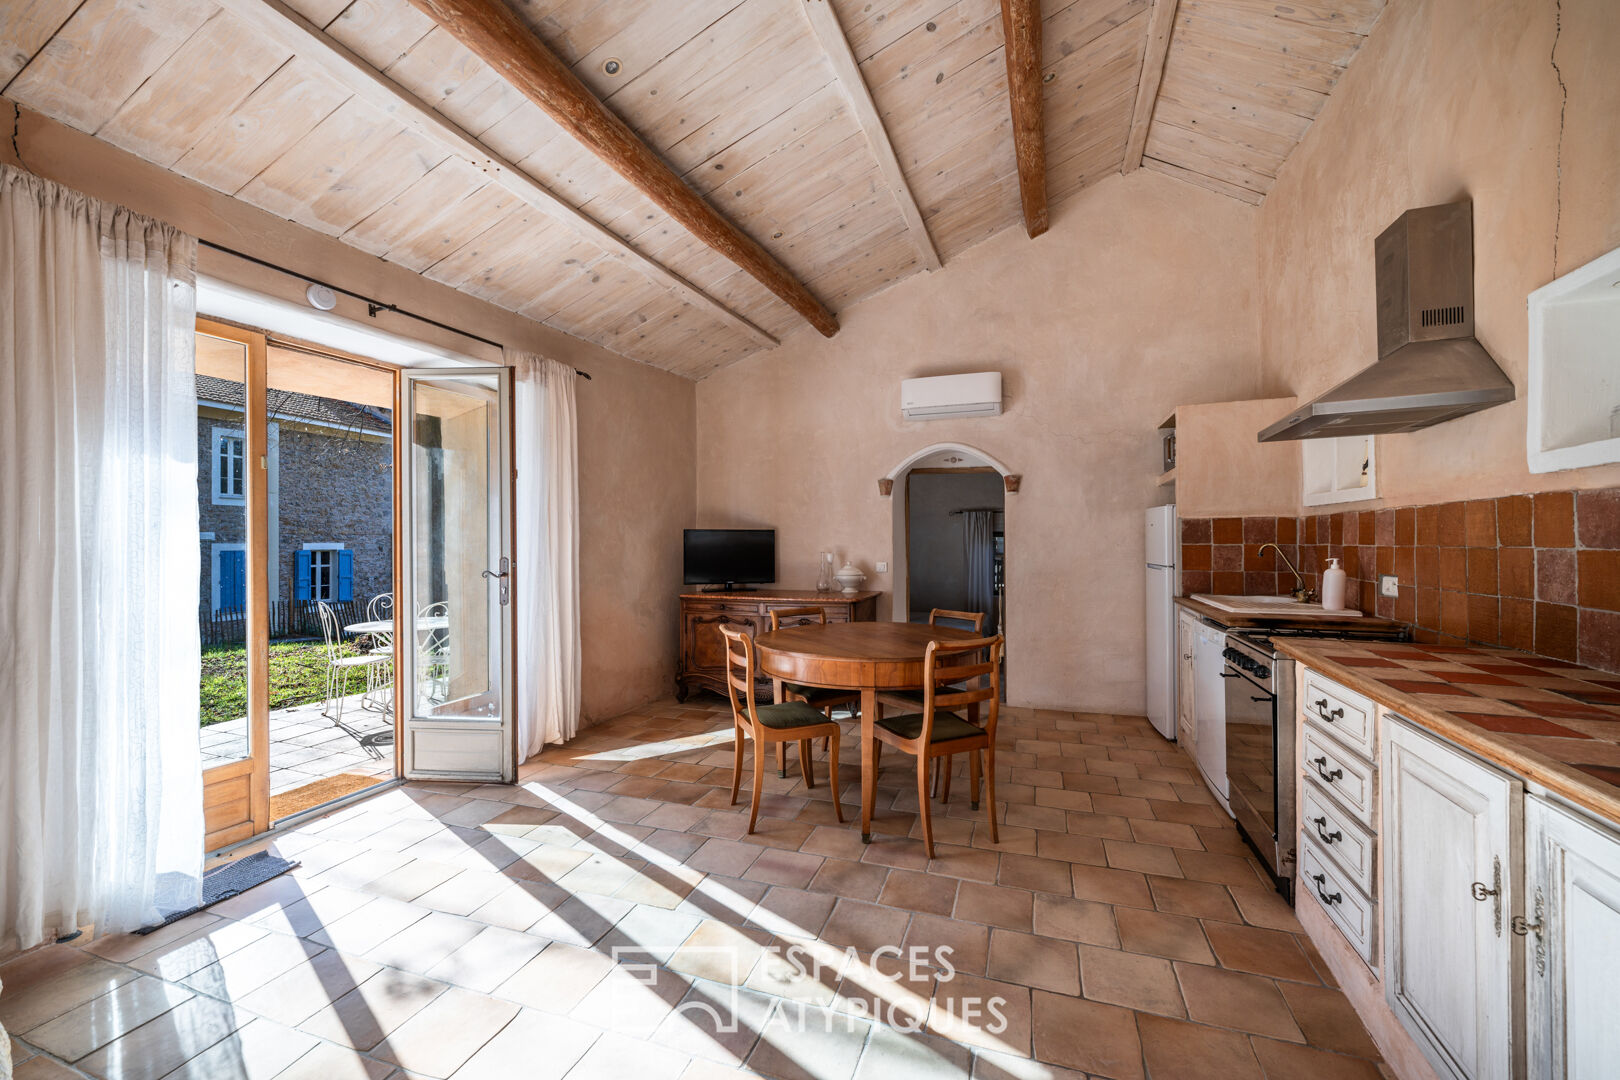 Maison provençale avec piscine et vue mer dans son écrin de verdure